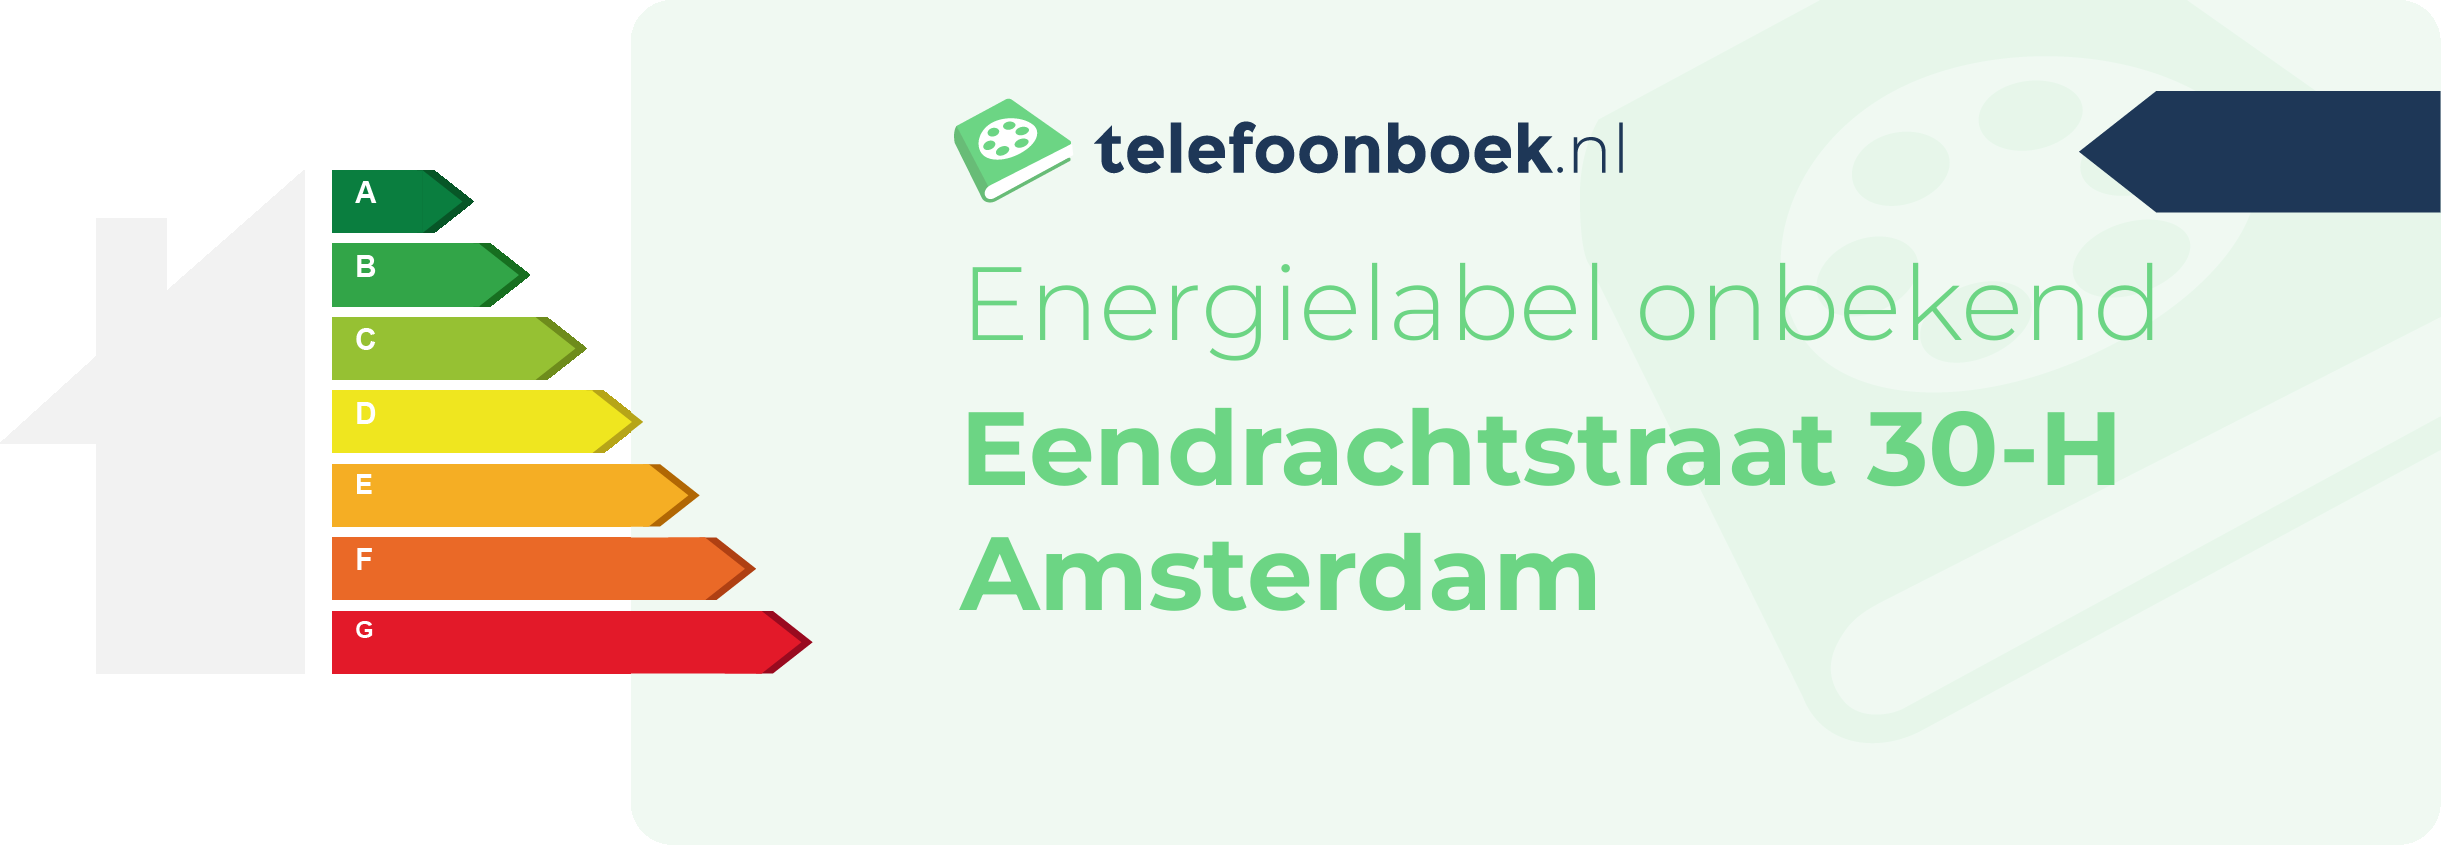 Energielabel Eendrachtstraat 30-H Amsterdam